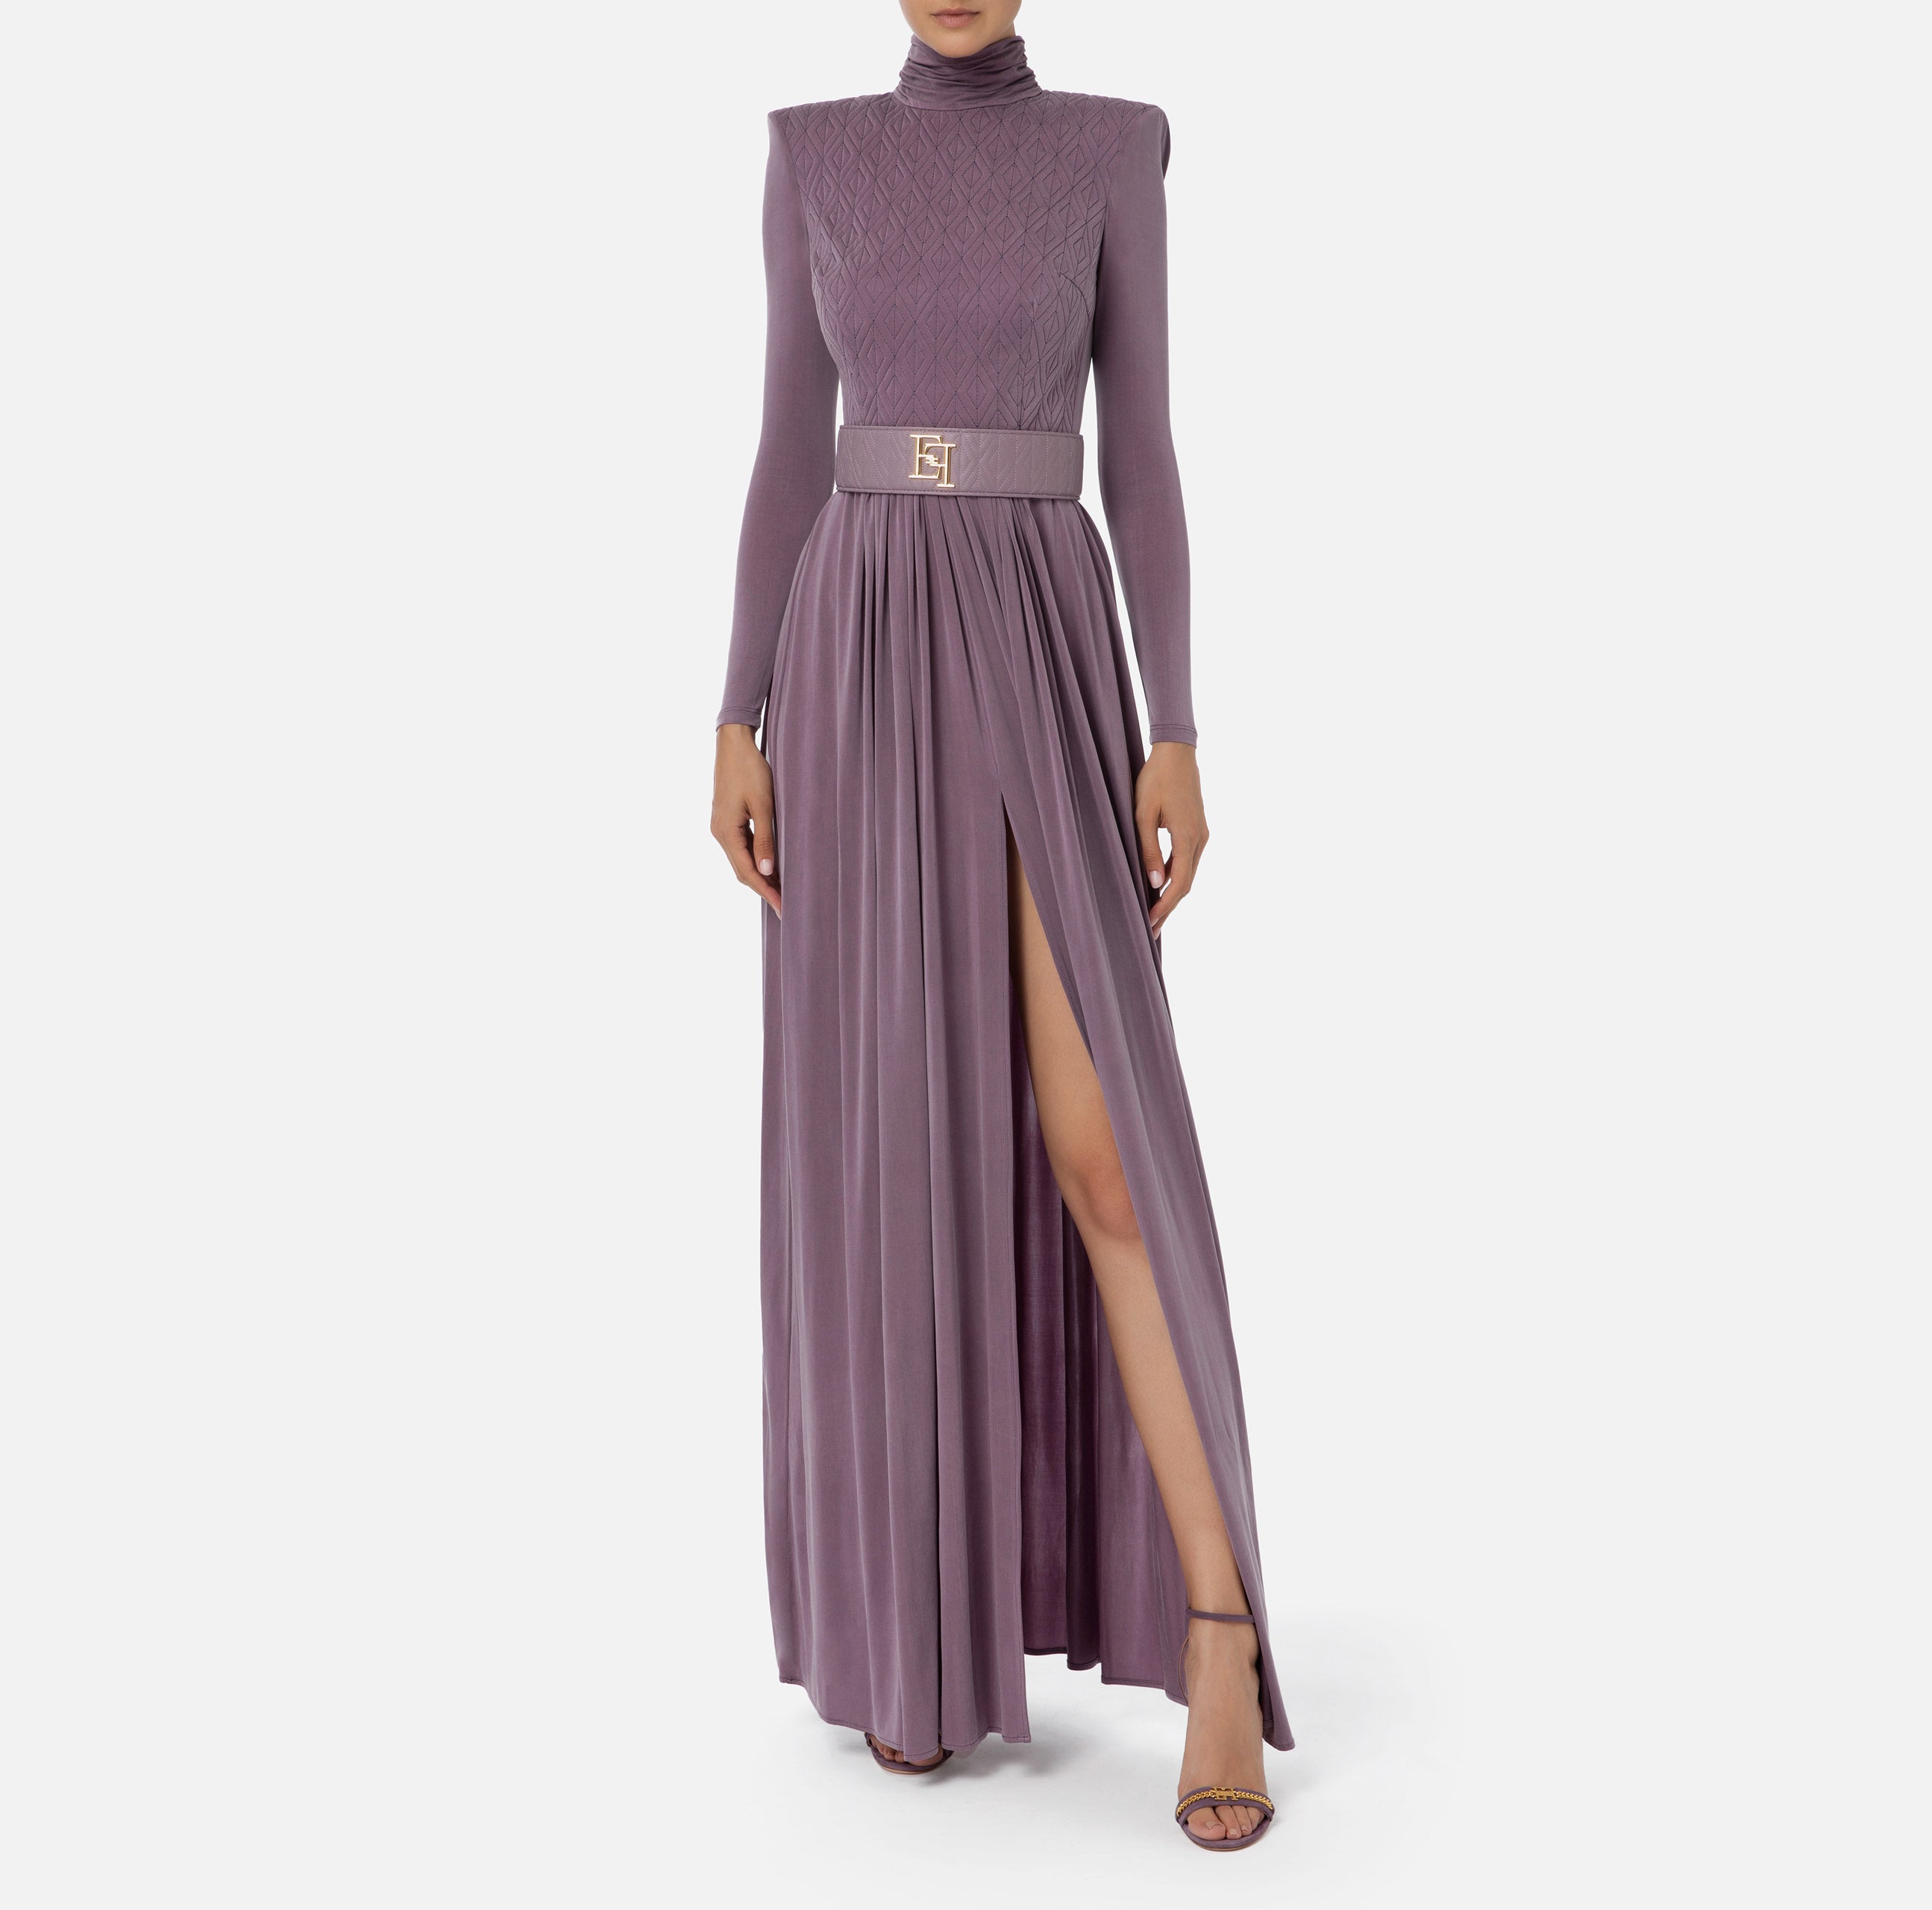 Elisabetta Franchi Women's Dress AB39336E2 Candy violet